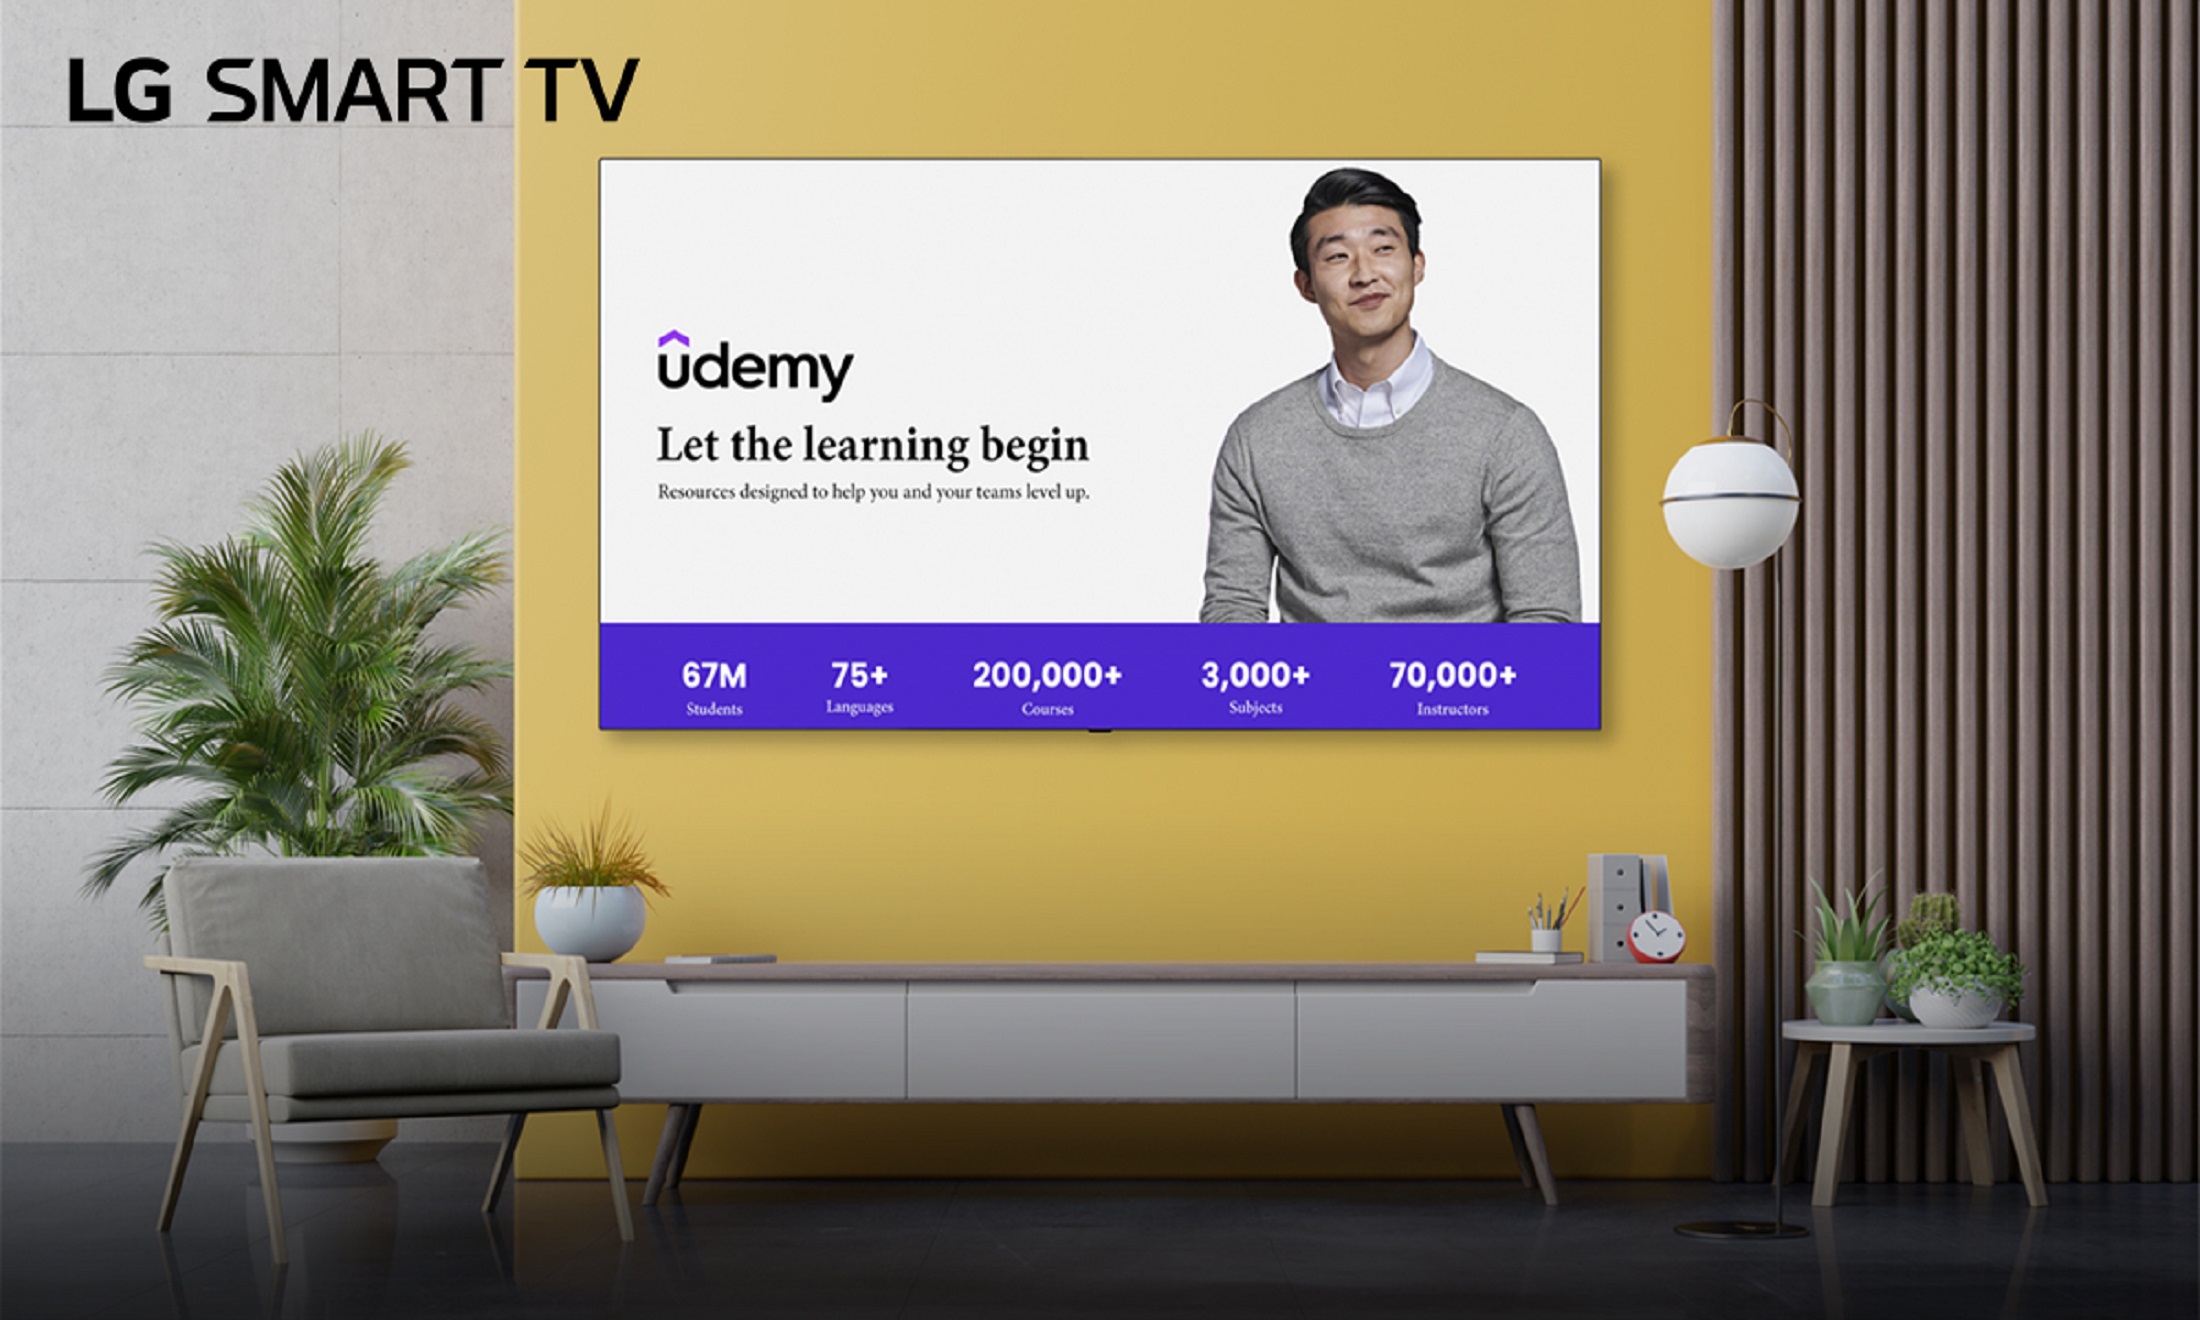 Smart TVs de LG abren las puertas al entretenimiento con nuevas aplicaciones